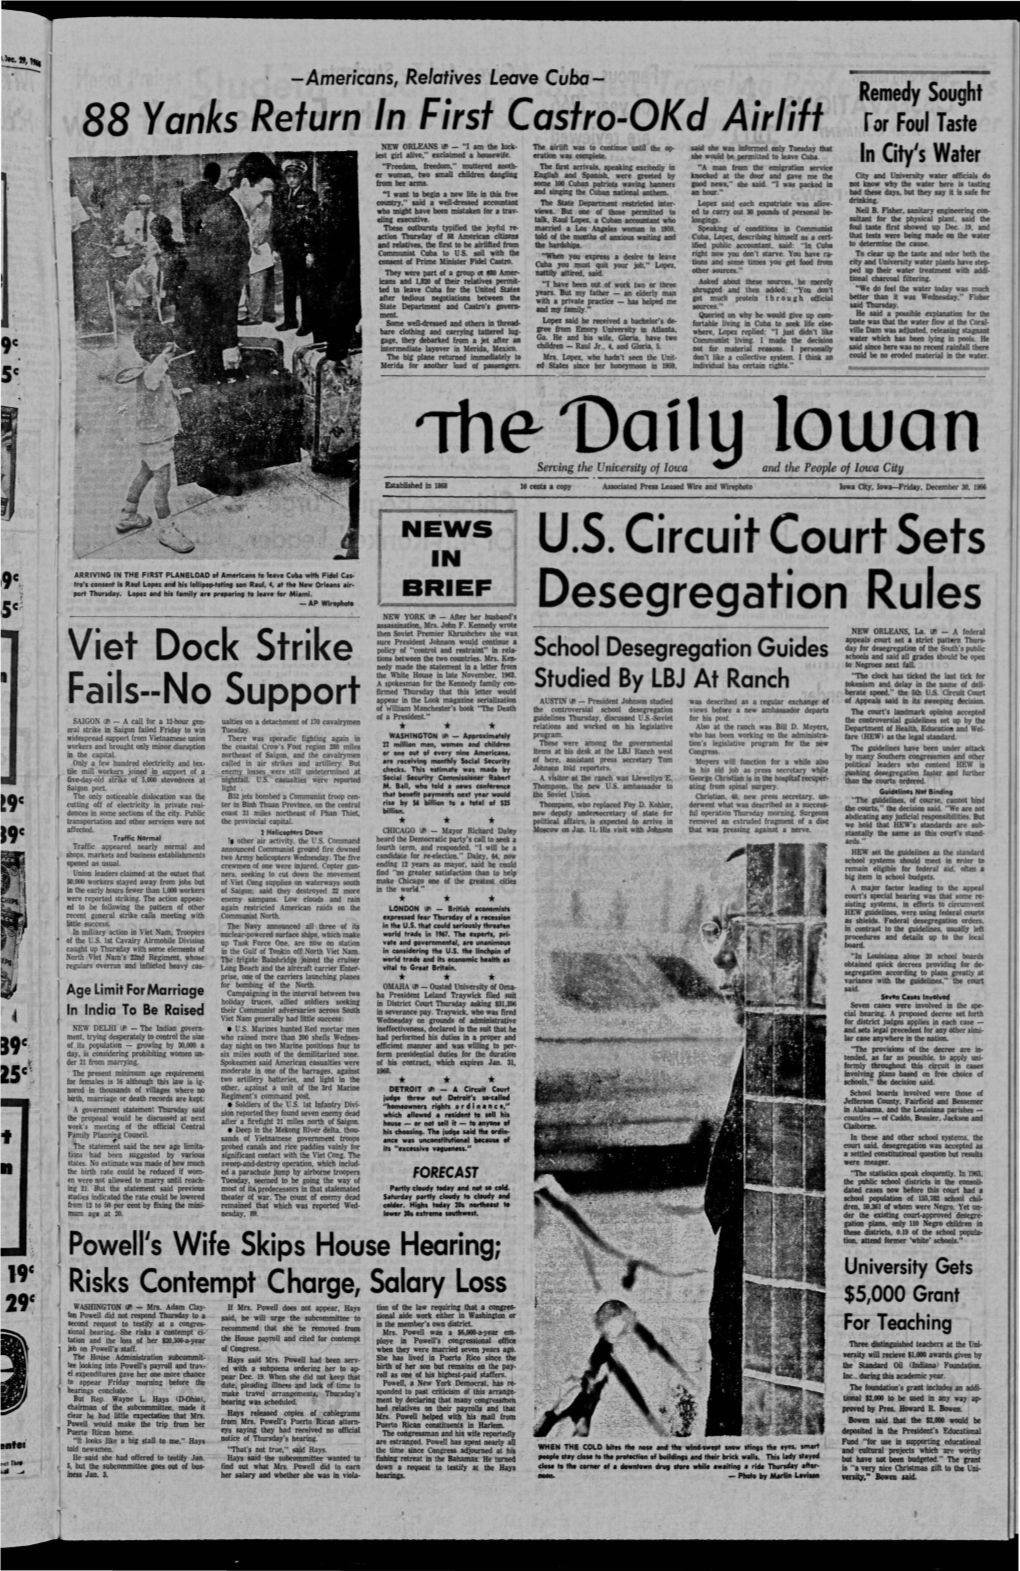 Daily Iowan (Iowa City, Iowa), 1966-12-30